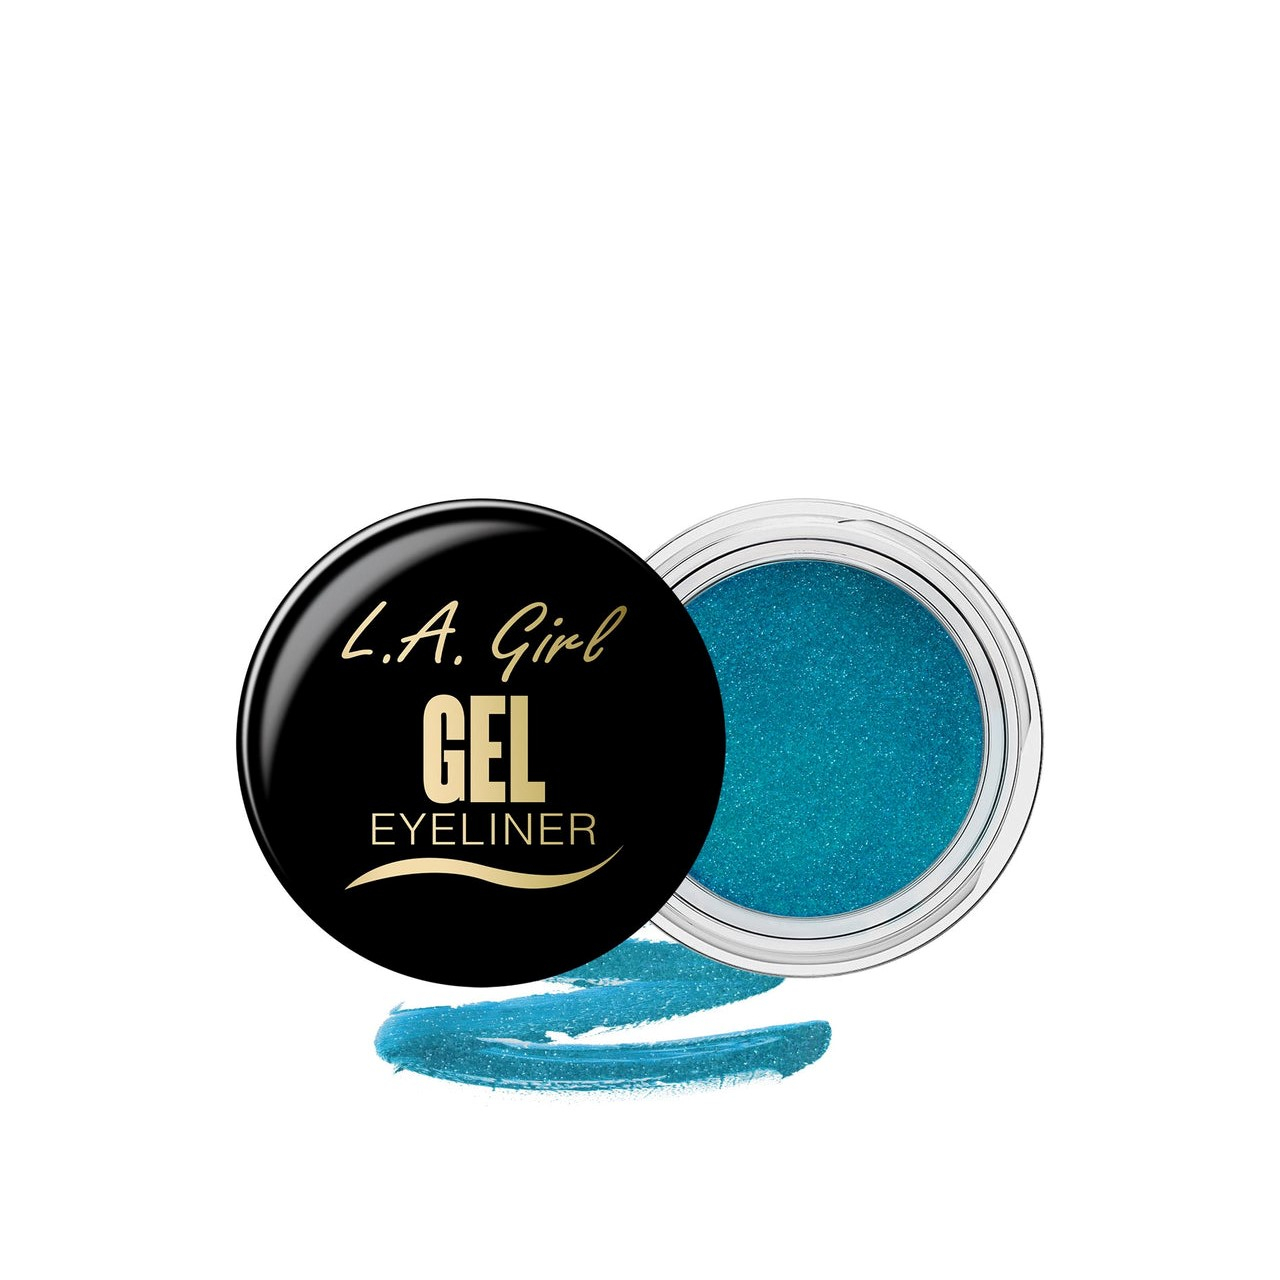 L.A. Girl Gel Eyeliner Mermaid Teal Frost 3g (0.11oz)